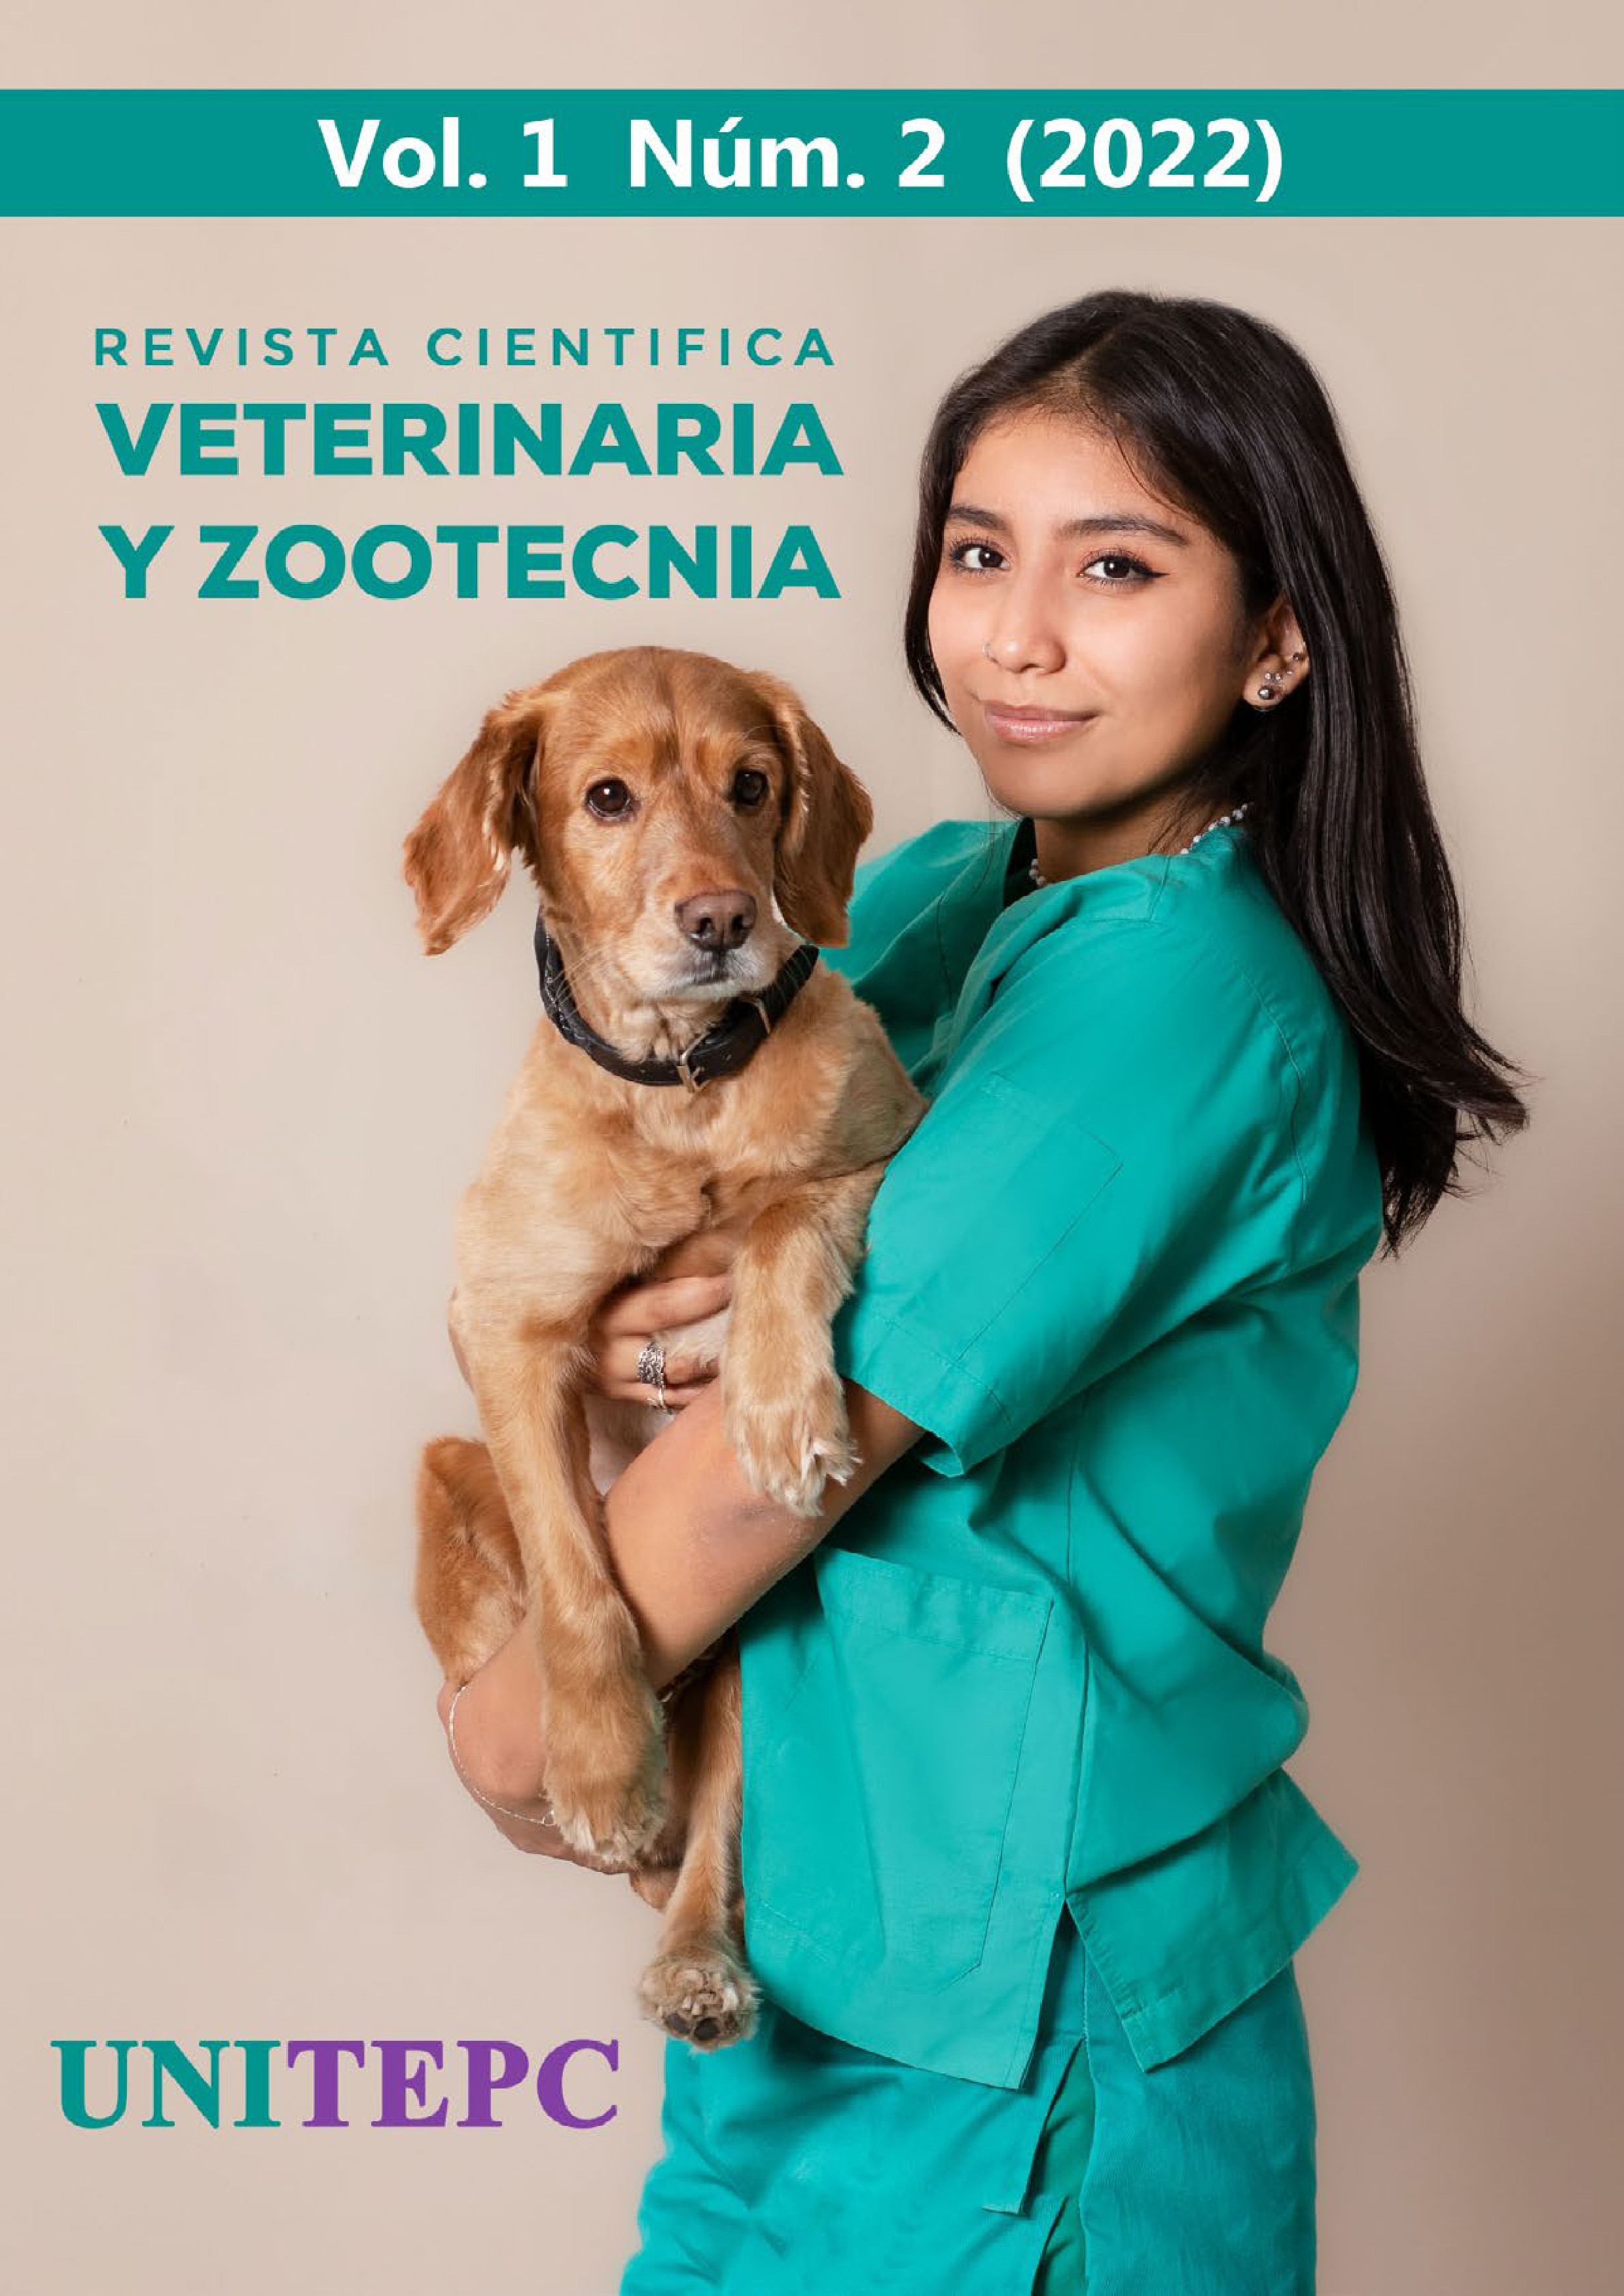 					Ver Vol. 1 Núm. 2 (2022): Revista Científica de Veterinaria y Zootecnia UNITEPC
				